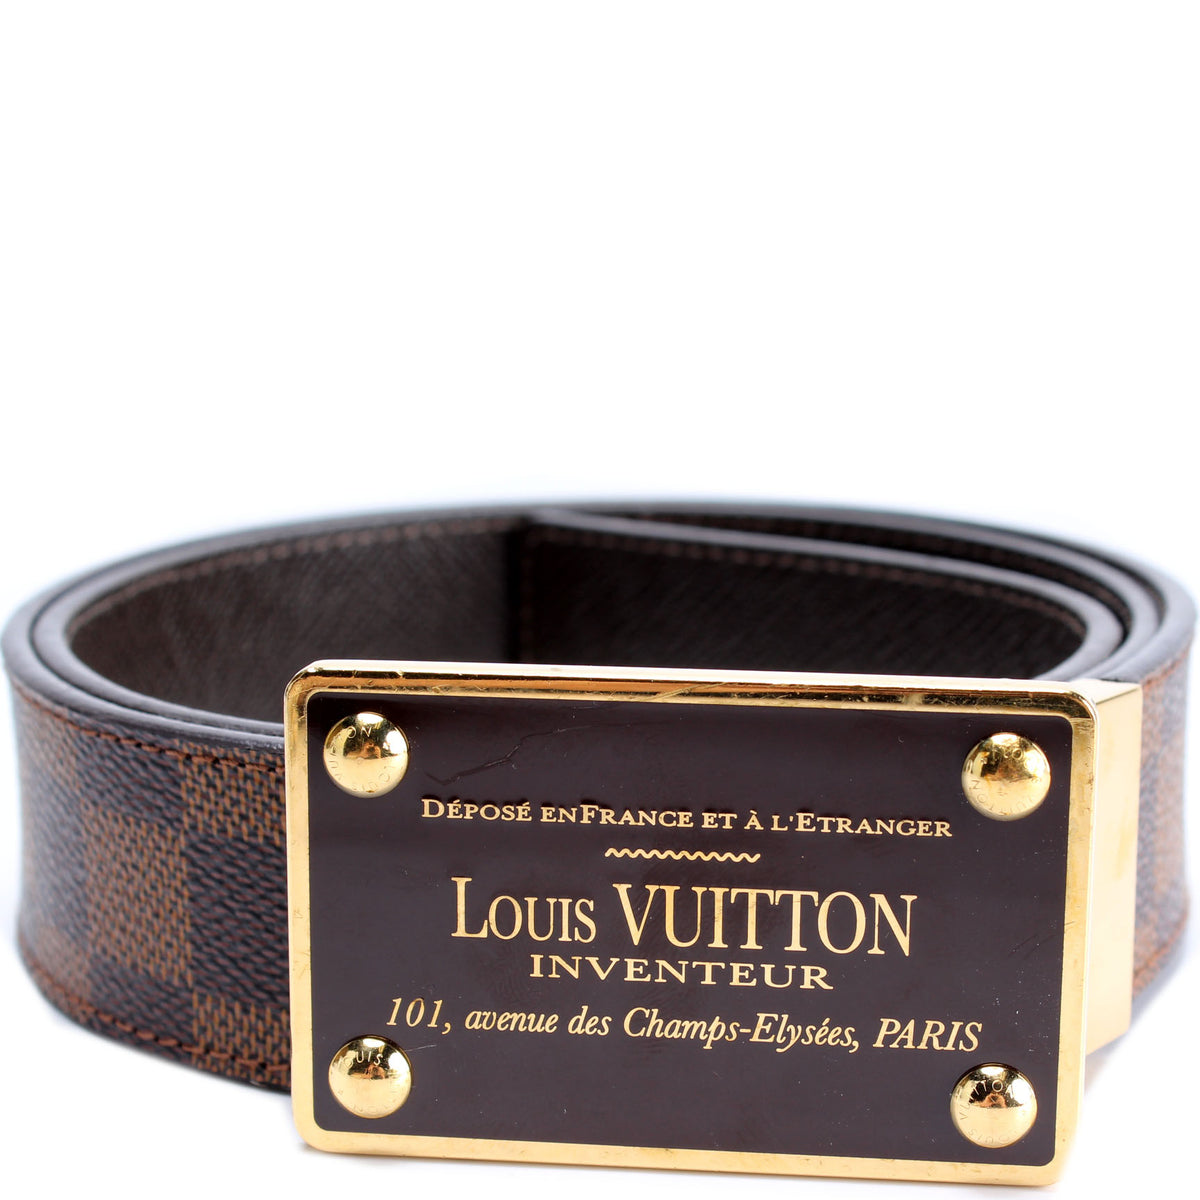 Louis Vuitton Monogram Inventeur Belt - 39 / 99.00 (SHG-1N9fa7) – LuxeDH